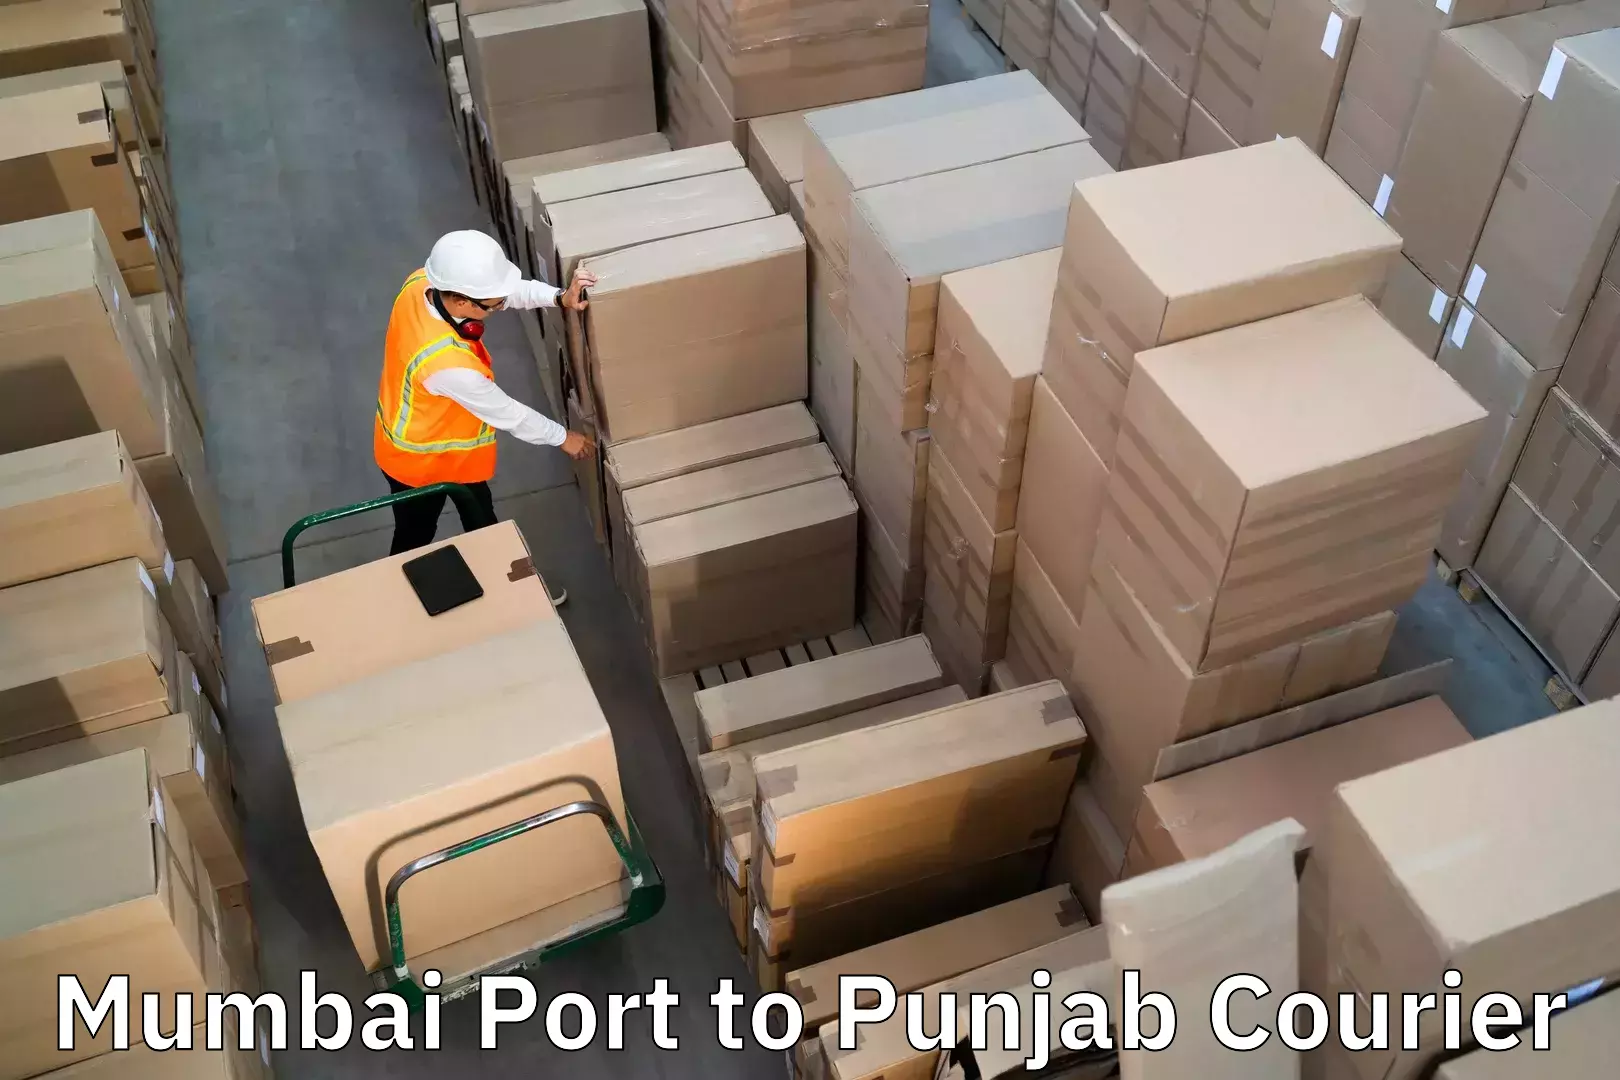 Baggage transport management Mumbai Port to Talwandi Sabo